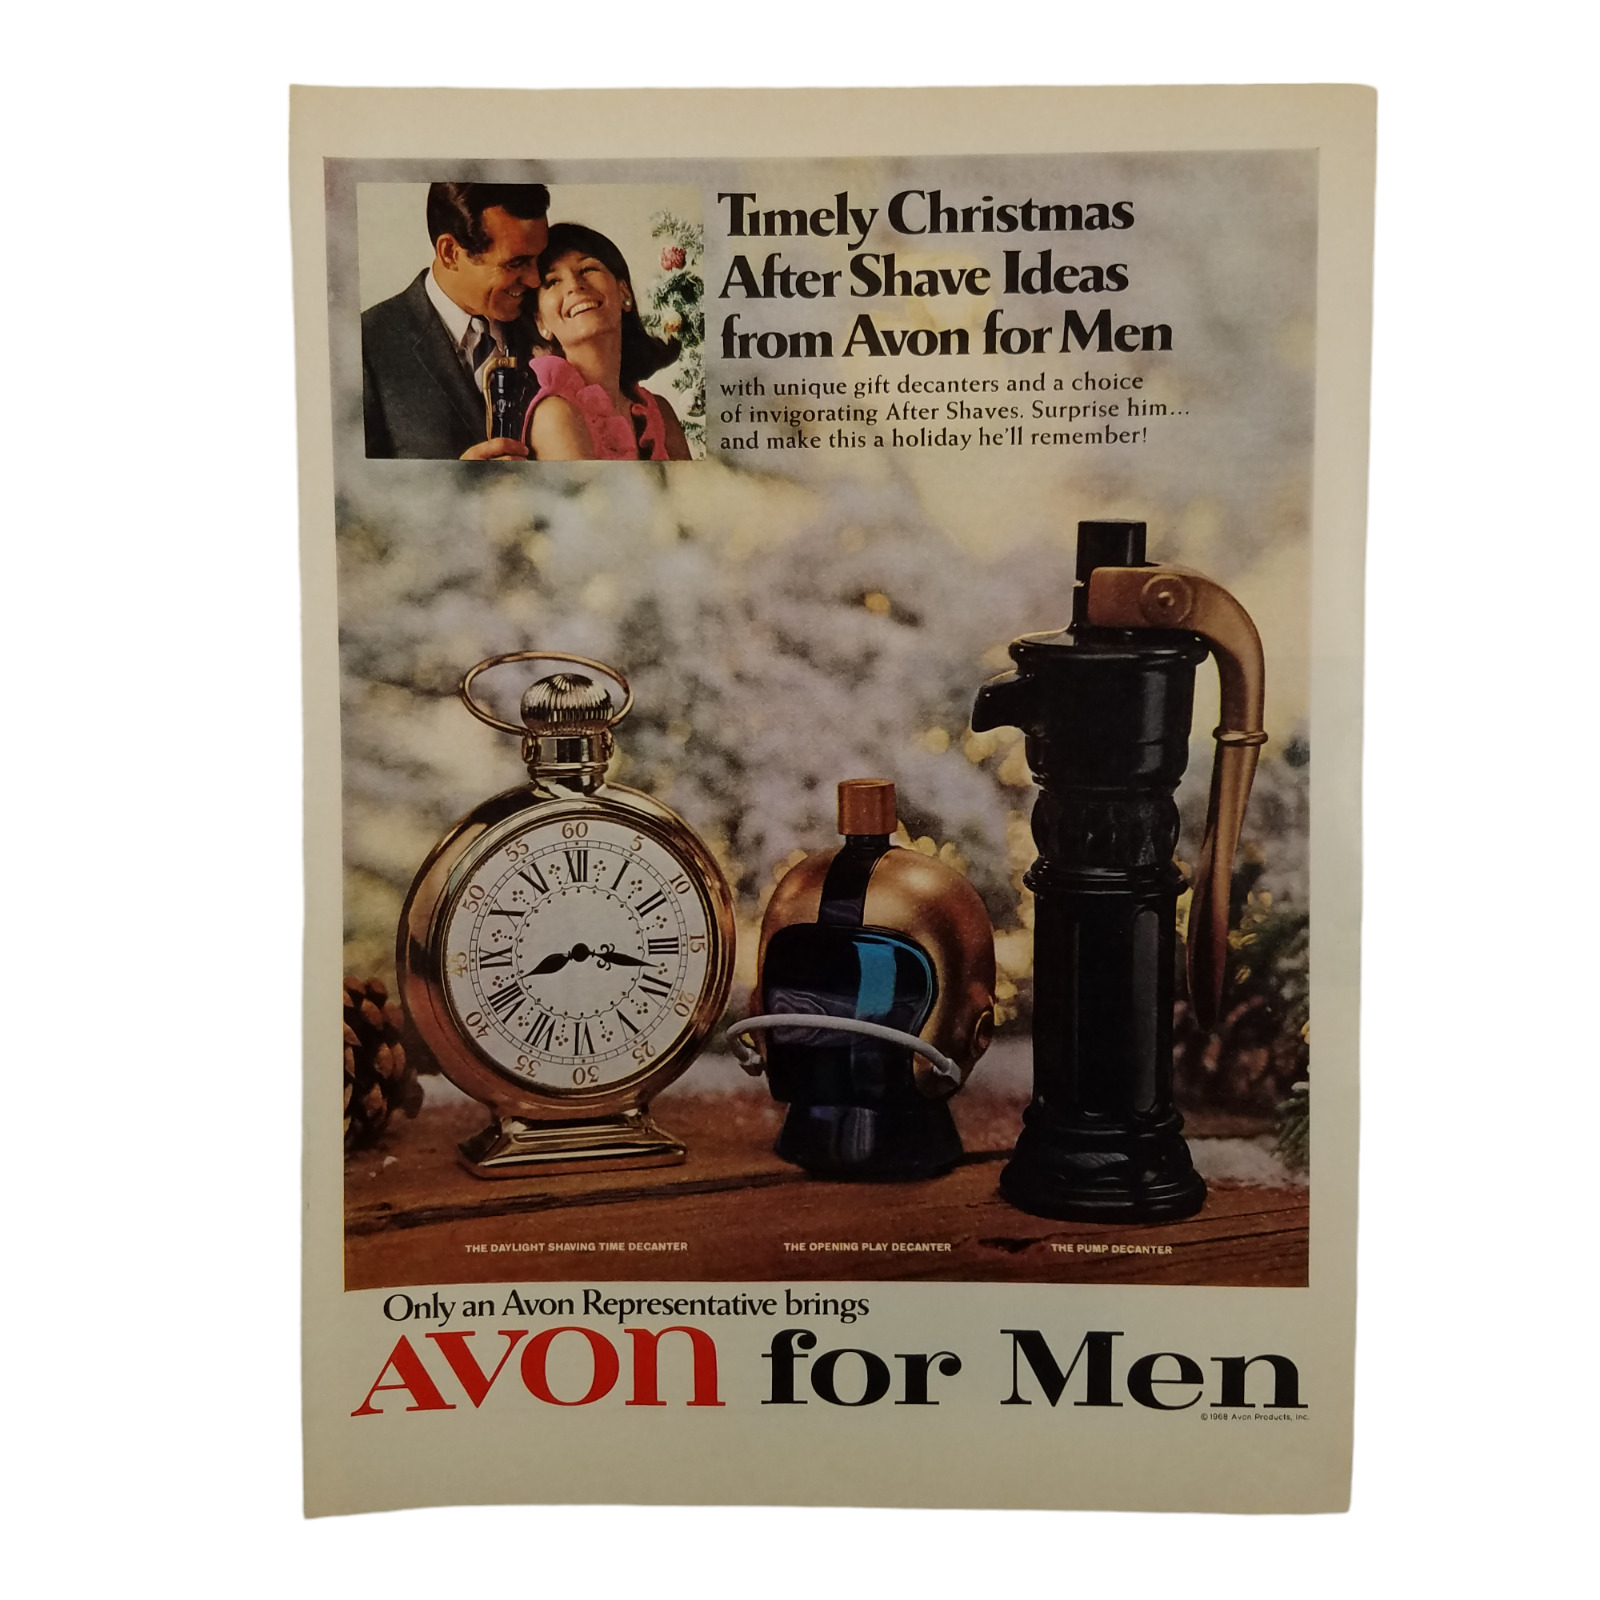 1968 Avon For Men Vintage Print Ad Christmas After Shave Ideas Unique Decanters